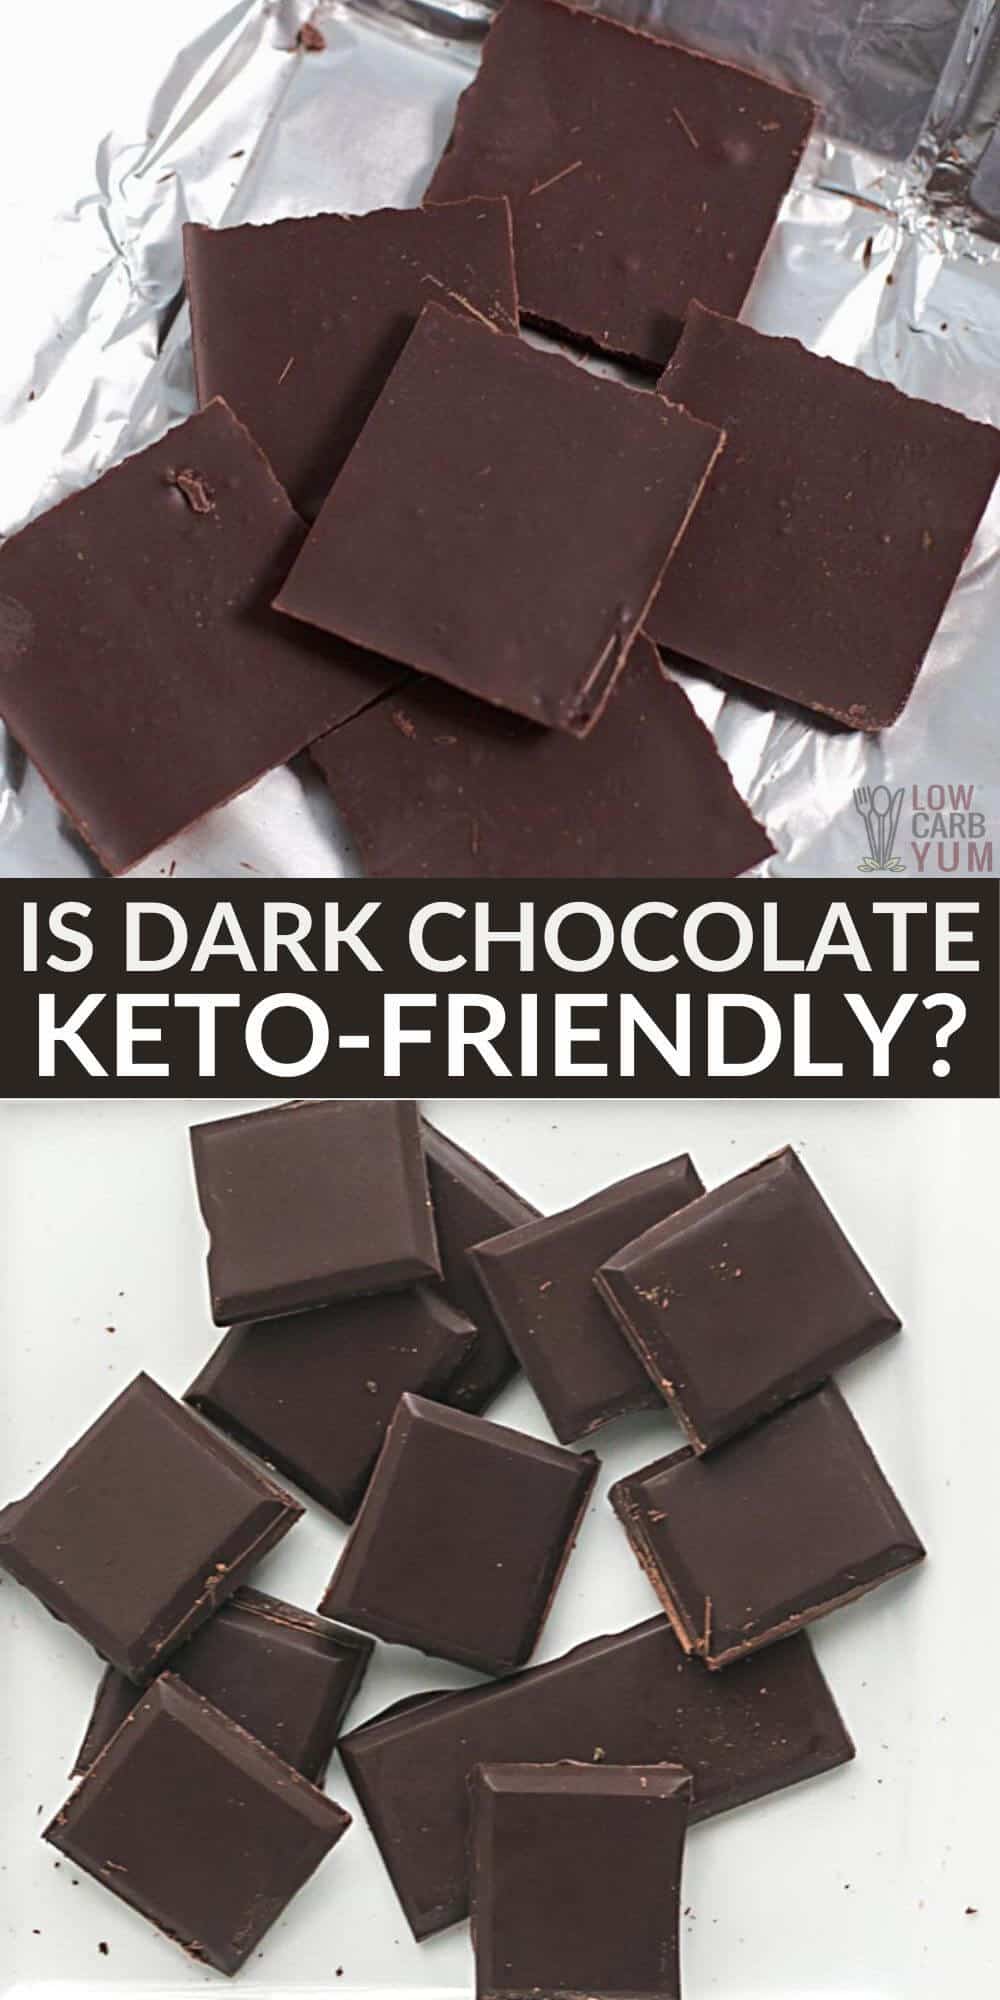 mørk sjokolade keto Pinterest-bilde.